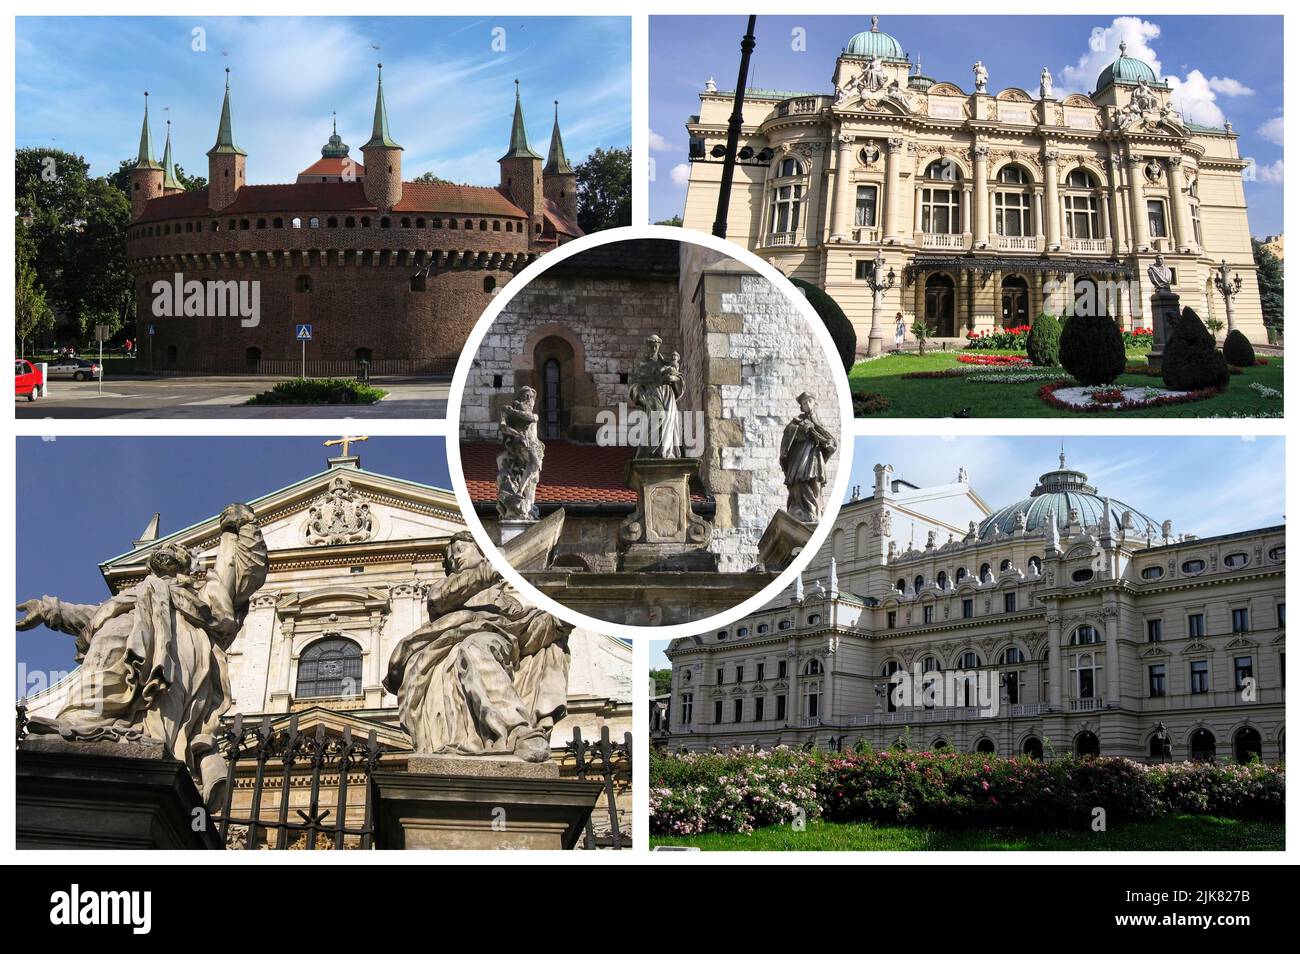 Cracovie en Pologne est l'une des plus anciennes villes du pays. Ancienne résidence des rois, elle est considérée comme la capitale de la culture polonaise Banque D'Images